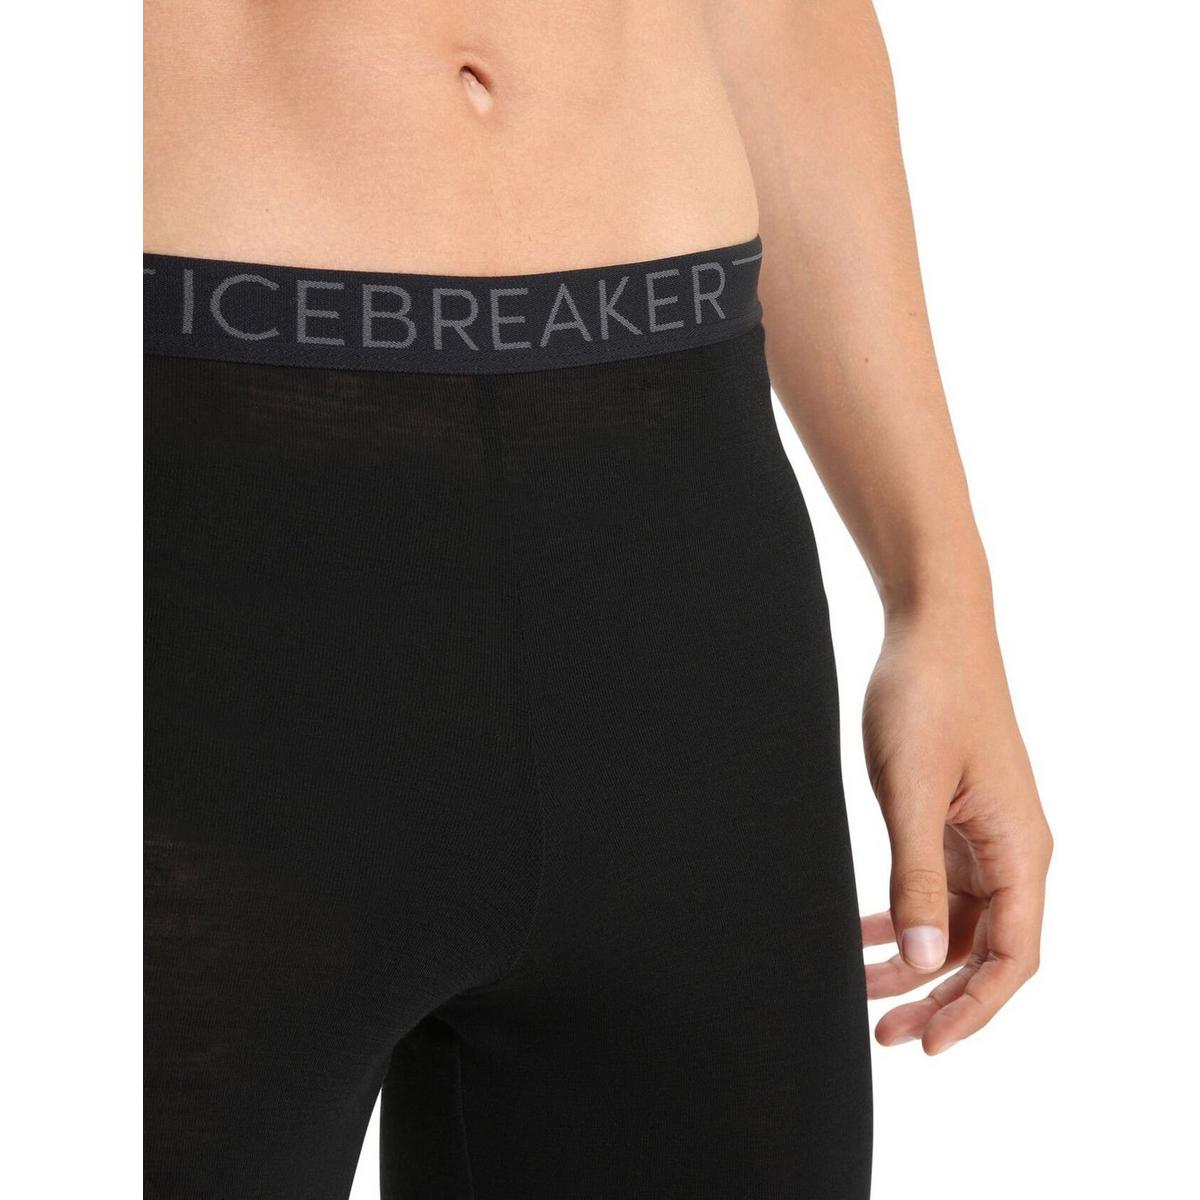 Icebreaker Men's 175 Everyday Legging - Black